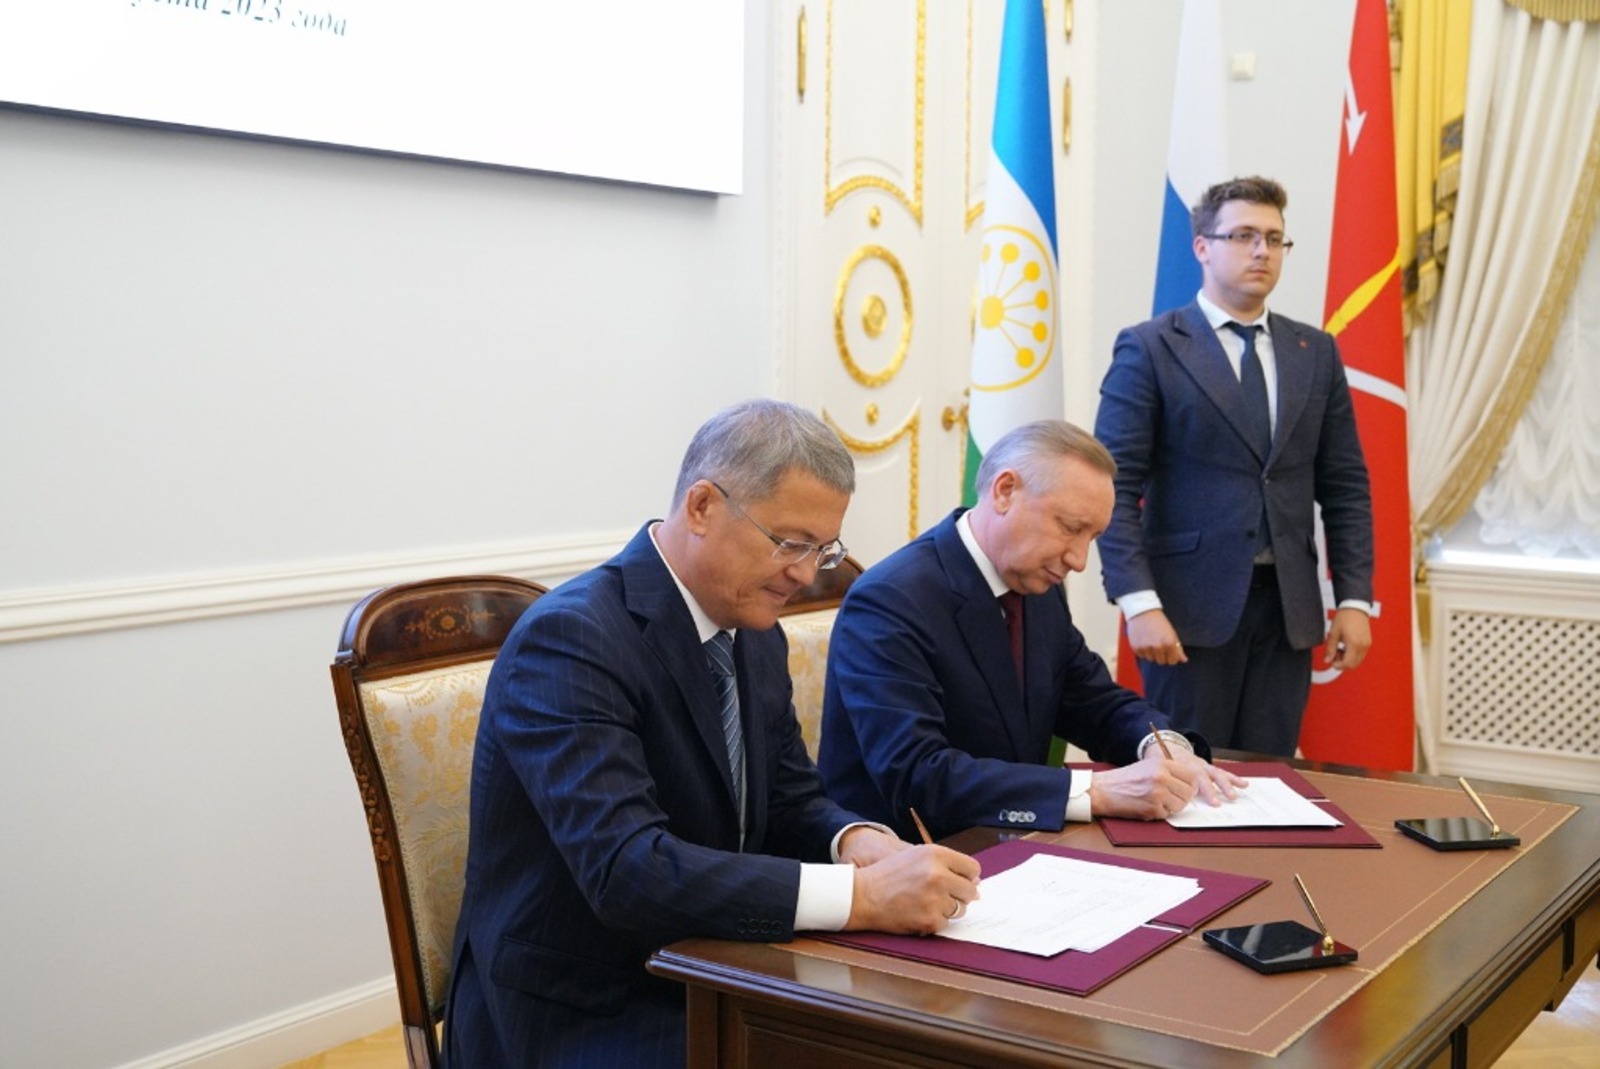 Башкирия и Санкт-Петербург утвердили дорожную карту развития сотрудничества до 2027 года